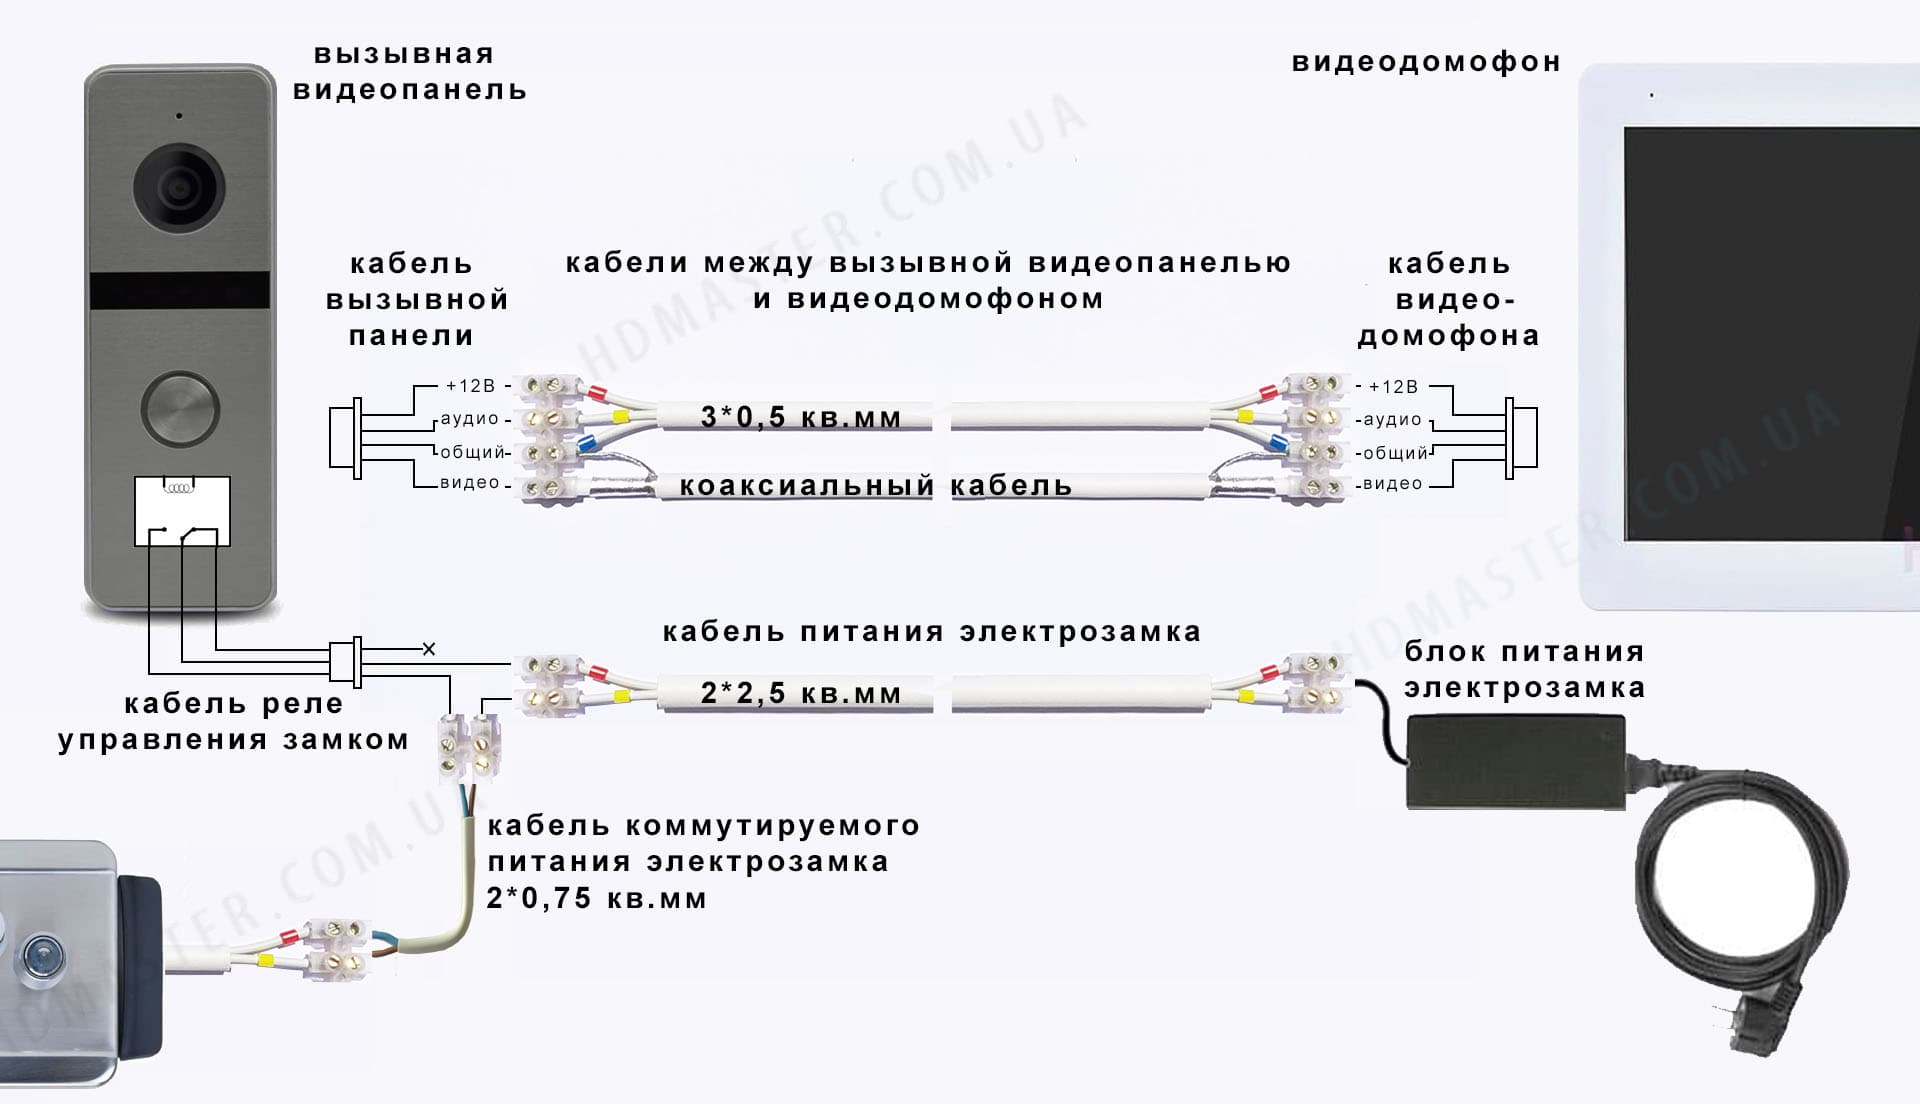 Схема подключения видеодомофона и электрозамка